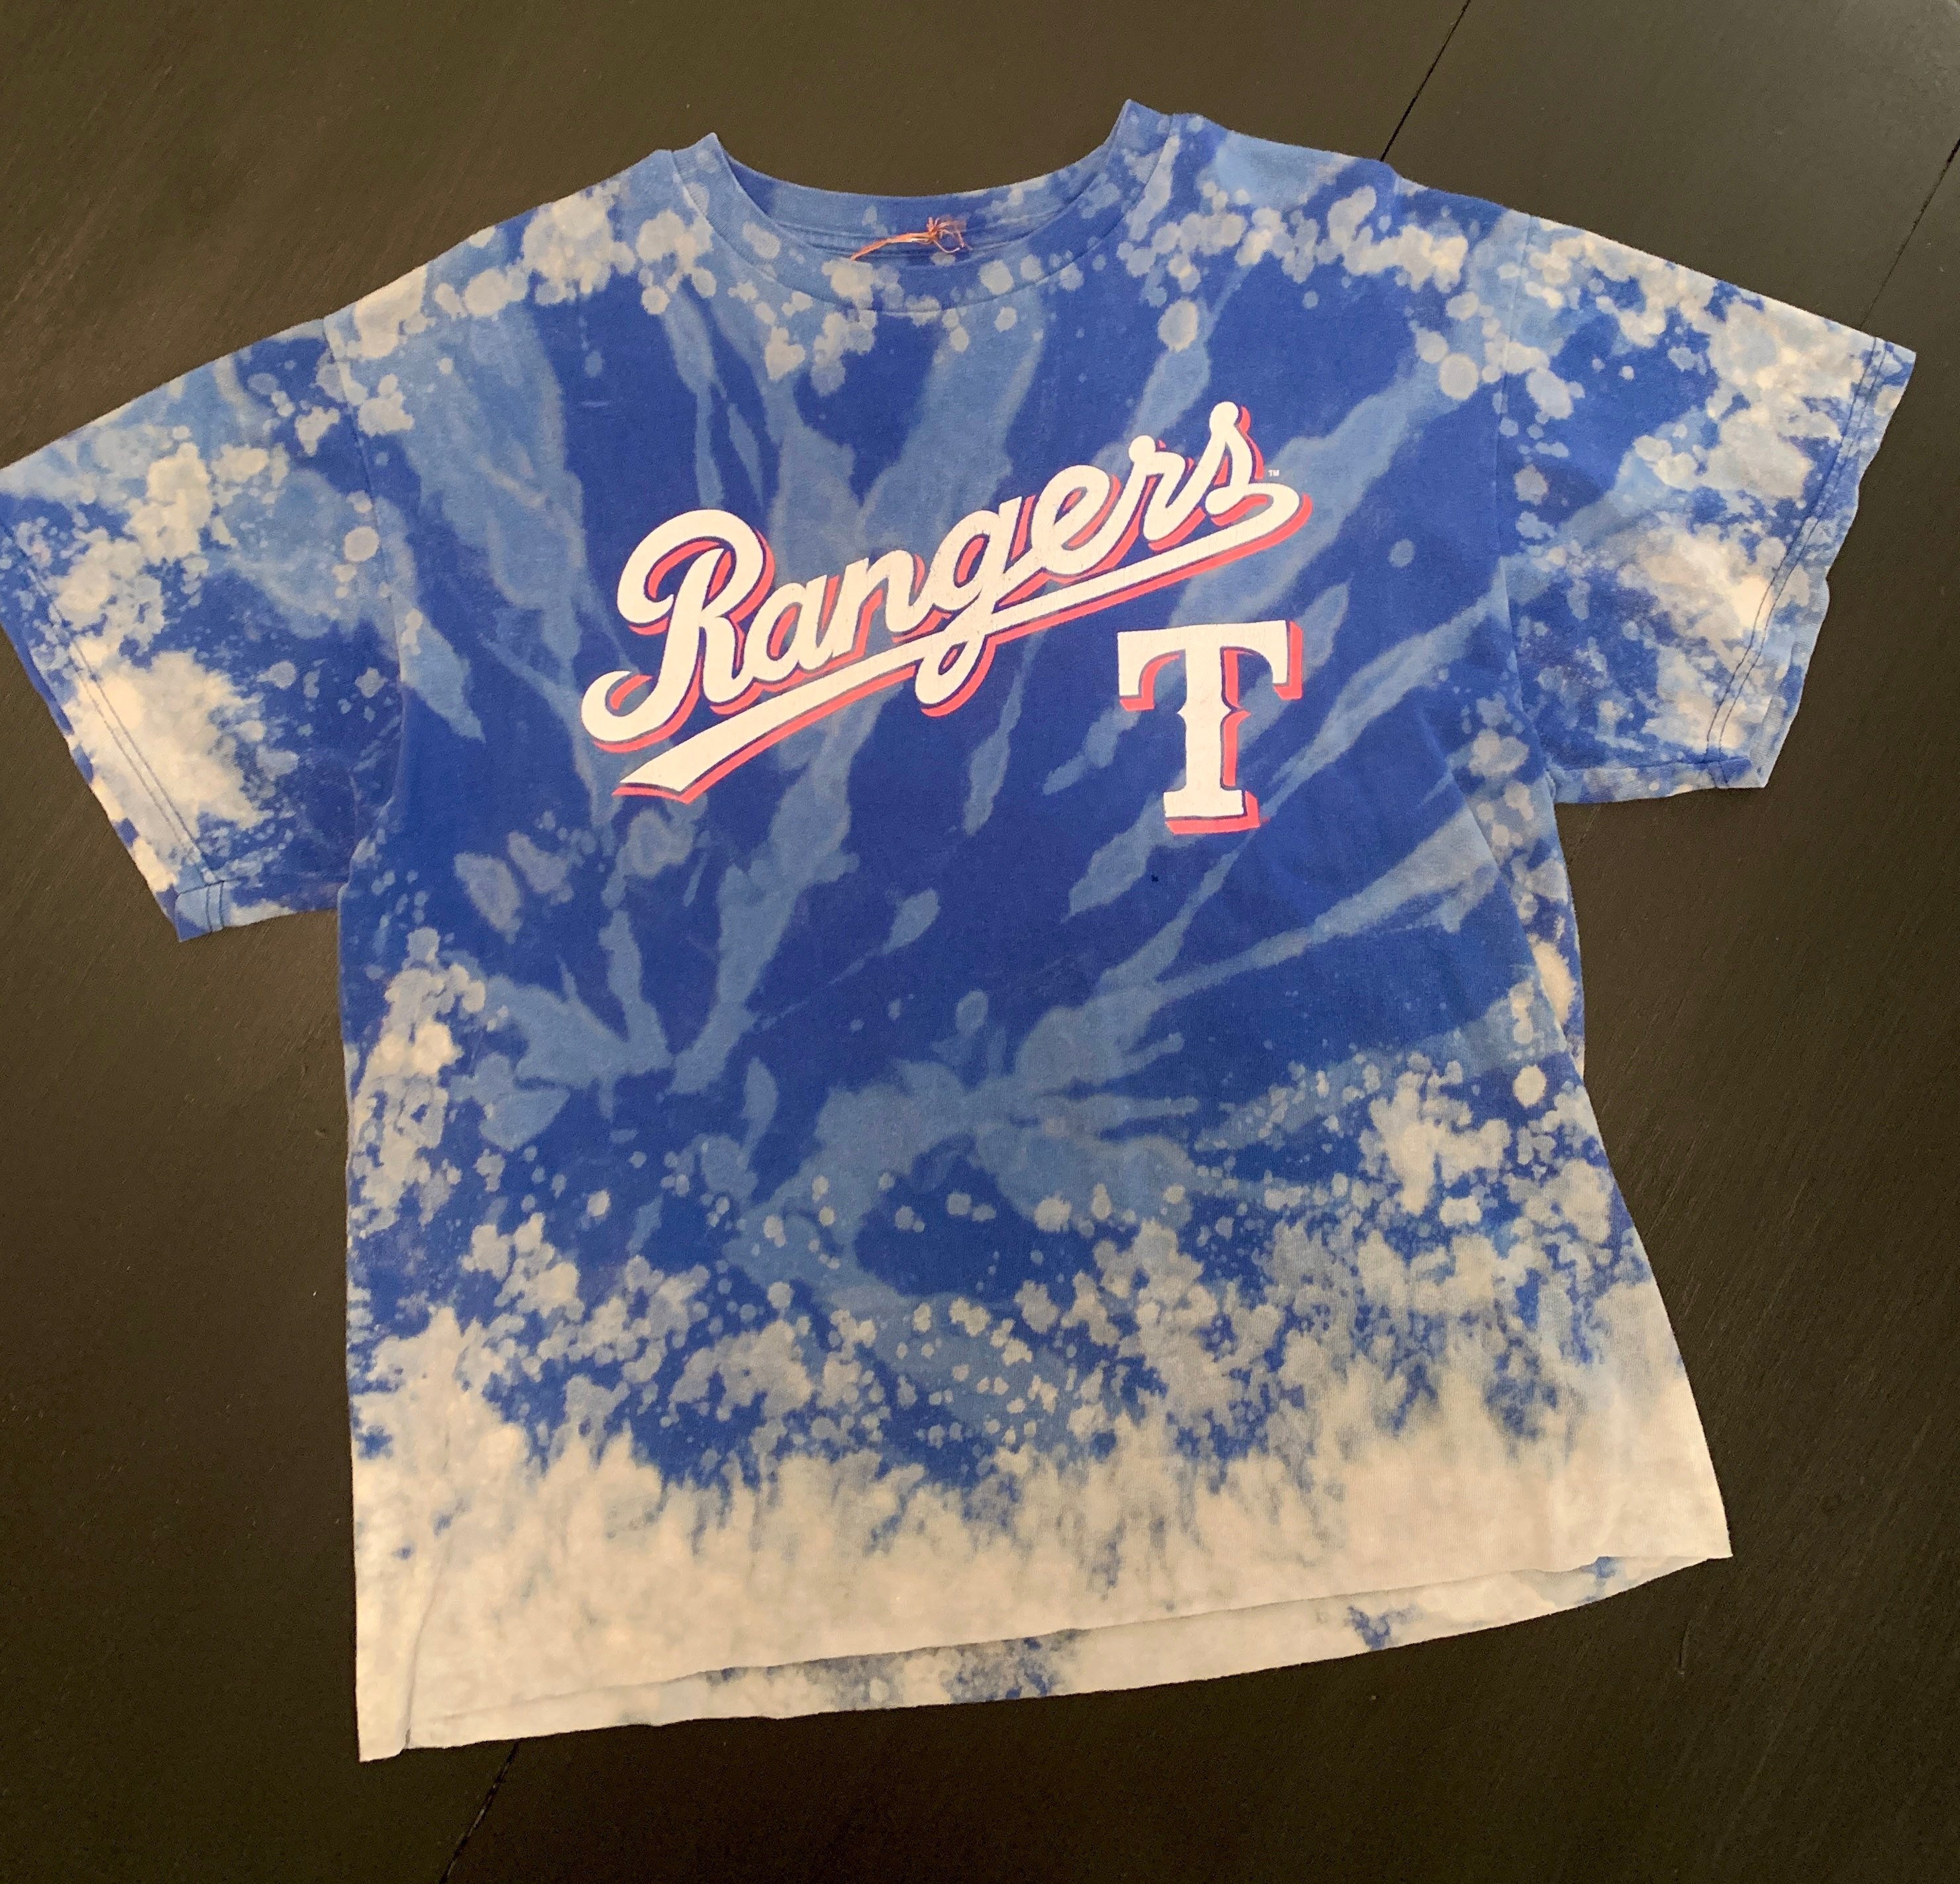 SALE!! Texas Rangers Hometown Pride T-Shirt Unisex Cotton S-5XL Gift Fans